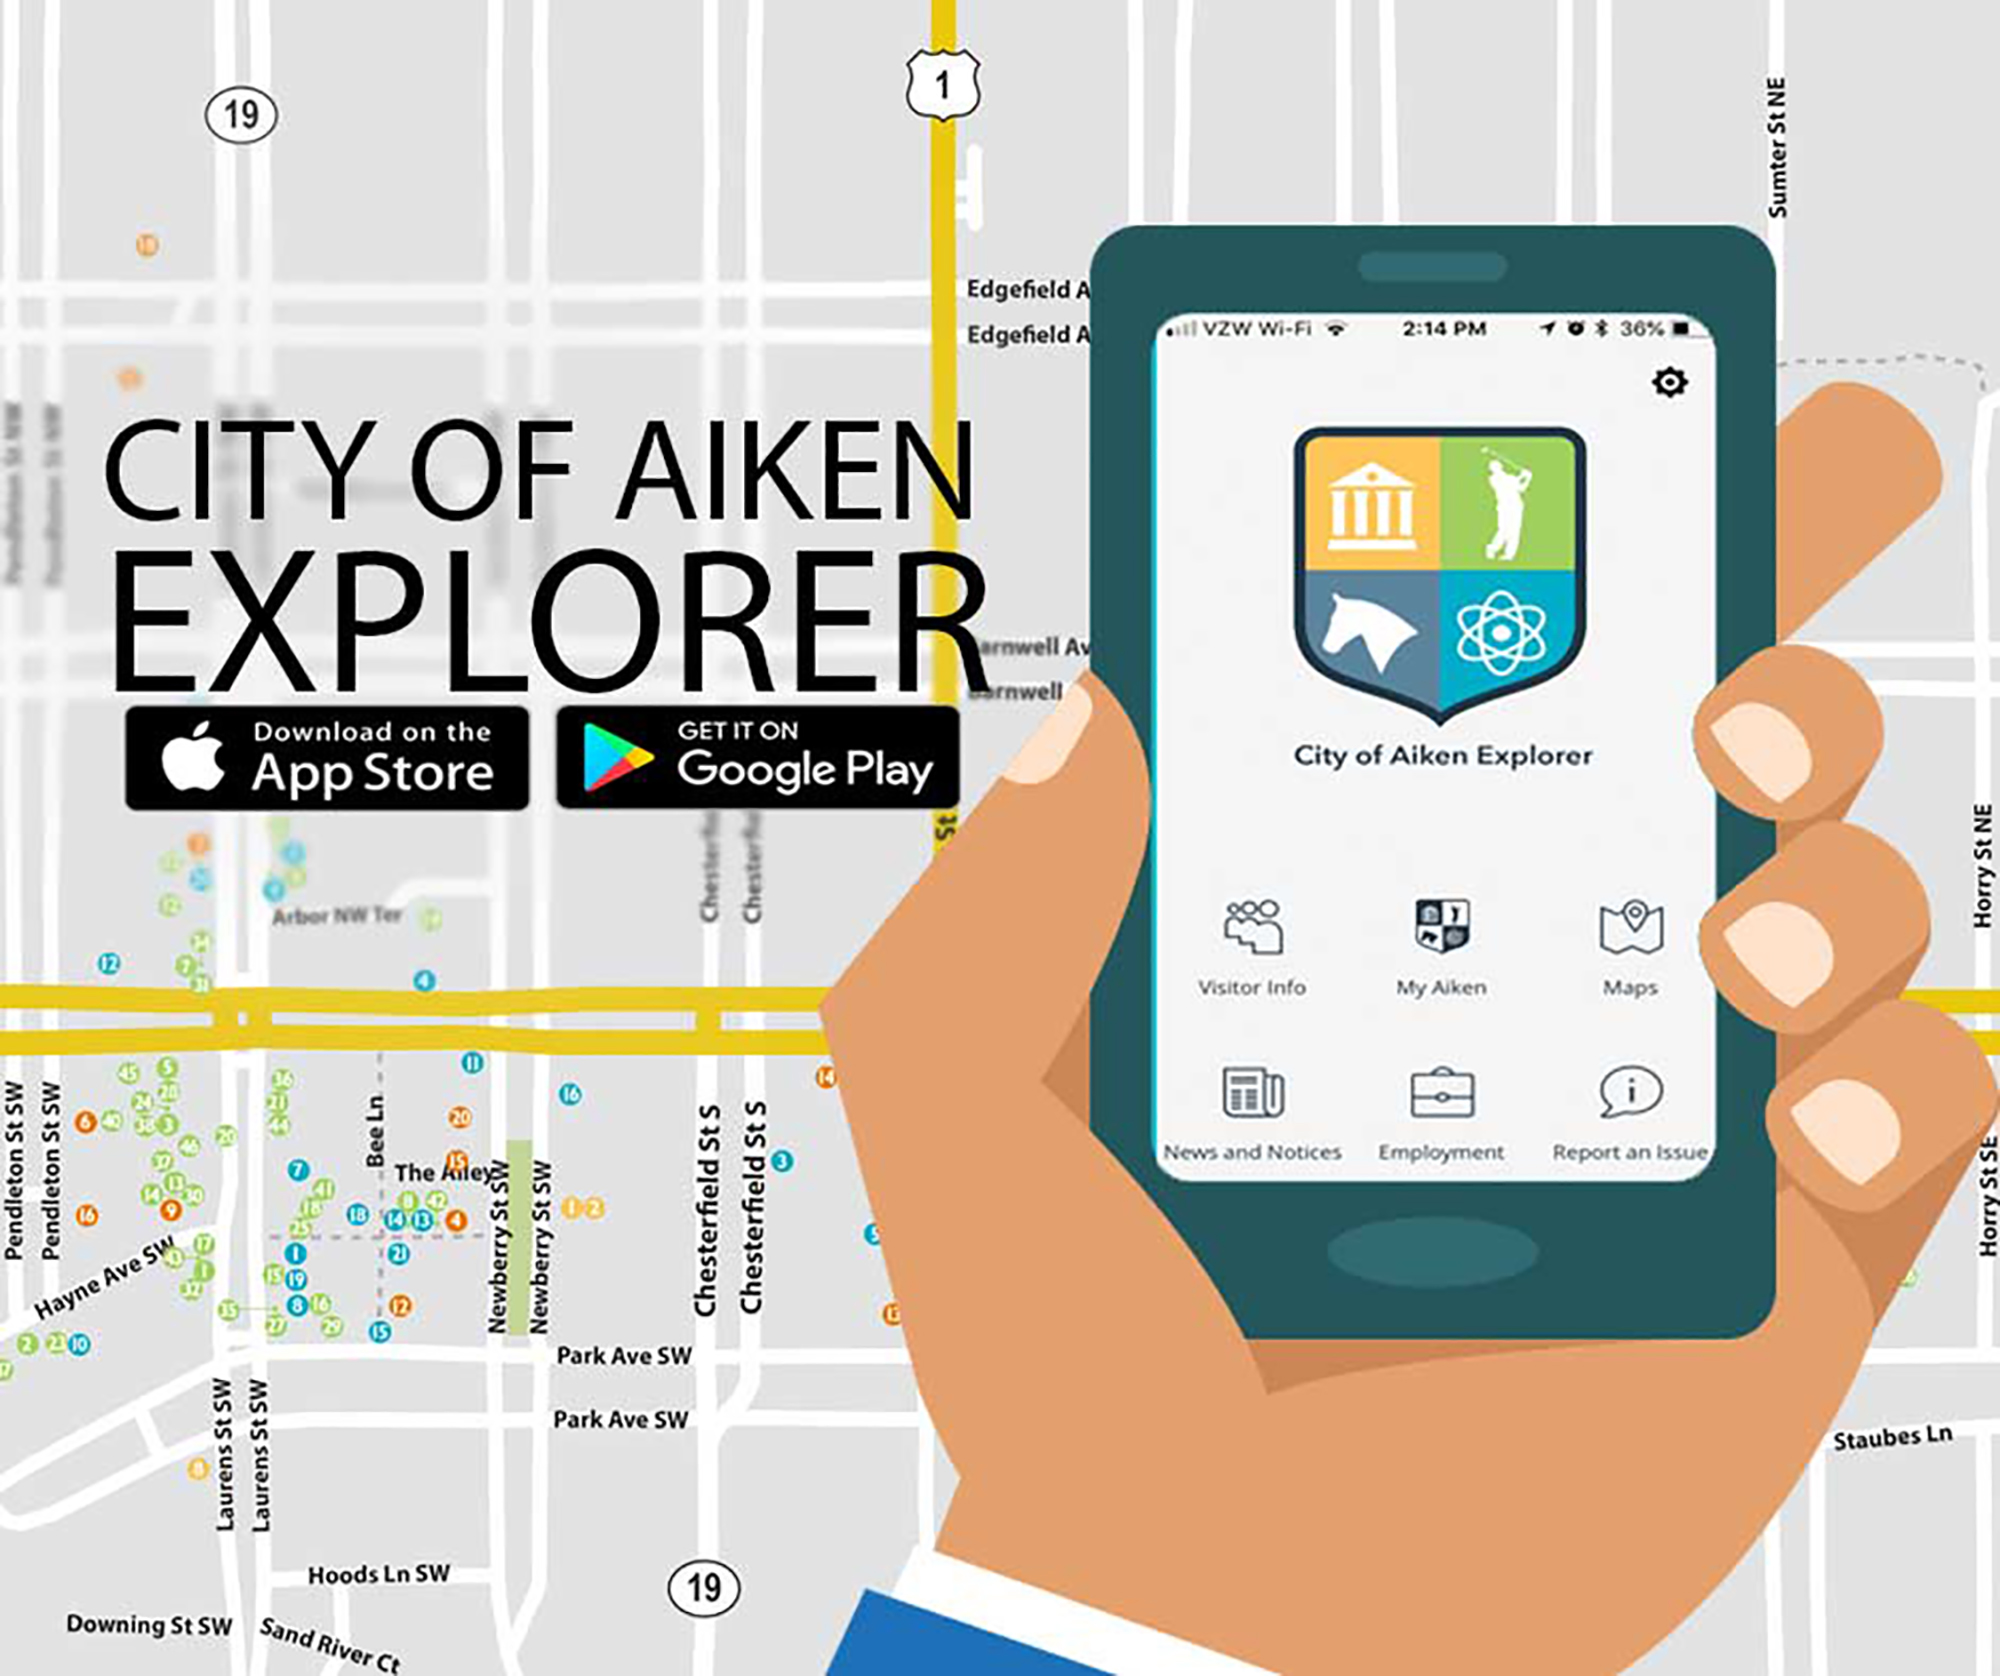 City of Aiken Explorer app